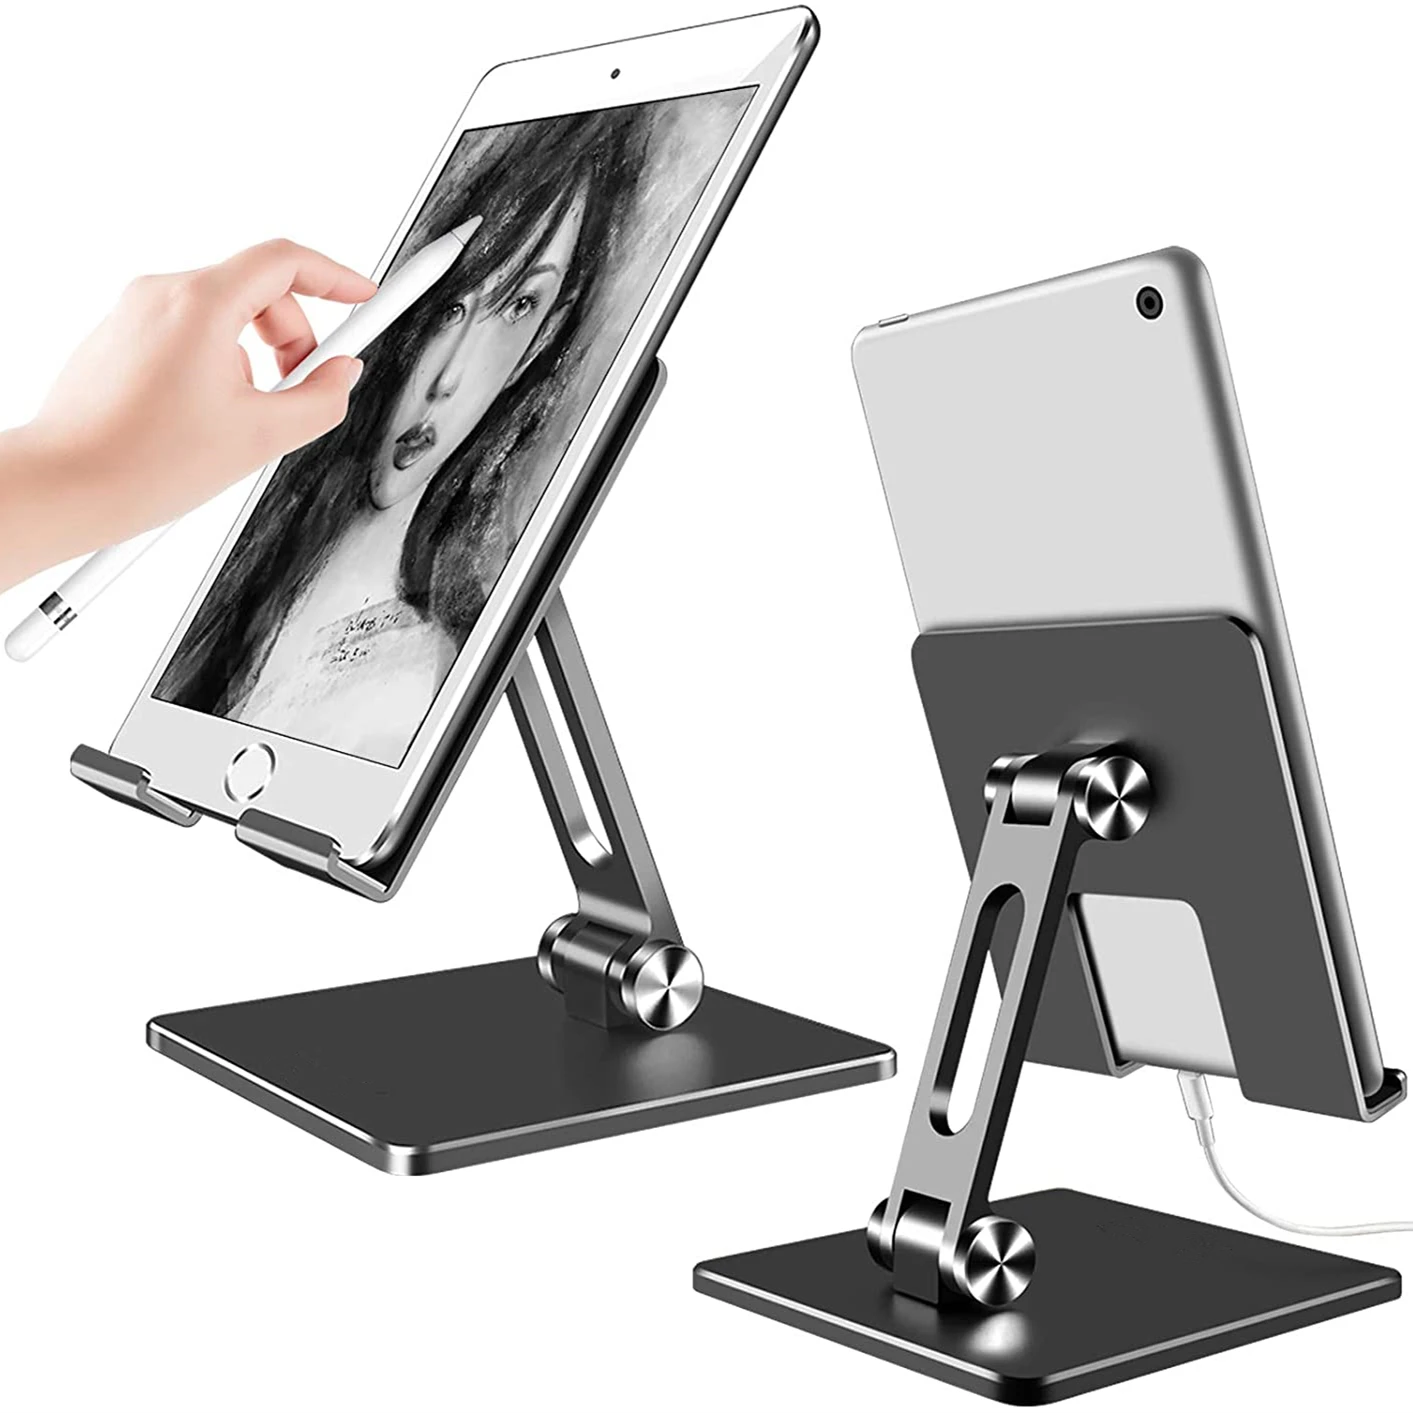 

Складная Алюминиевая Подставка для планшета, регулируемый кронштейн с двойной высотой и углом наклона для планшета 4-15,6 дюймов/Ipad/сотового ...